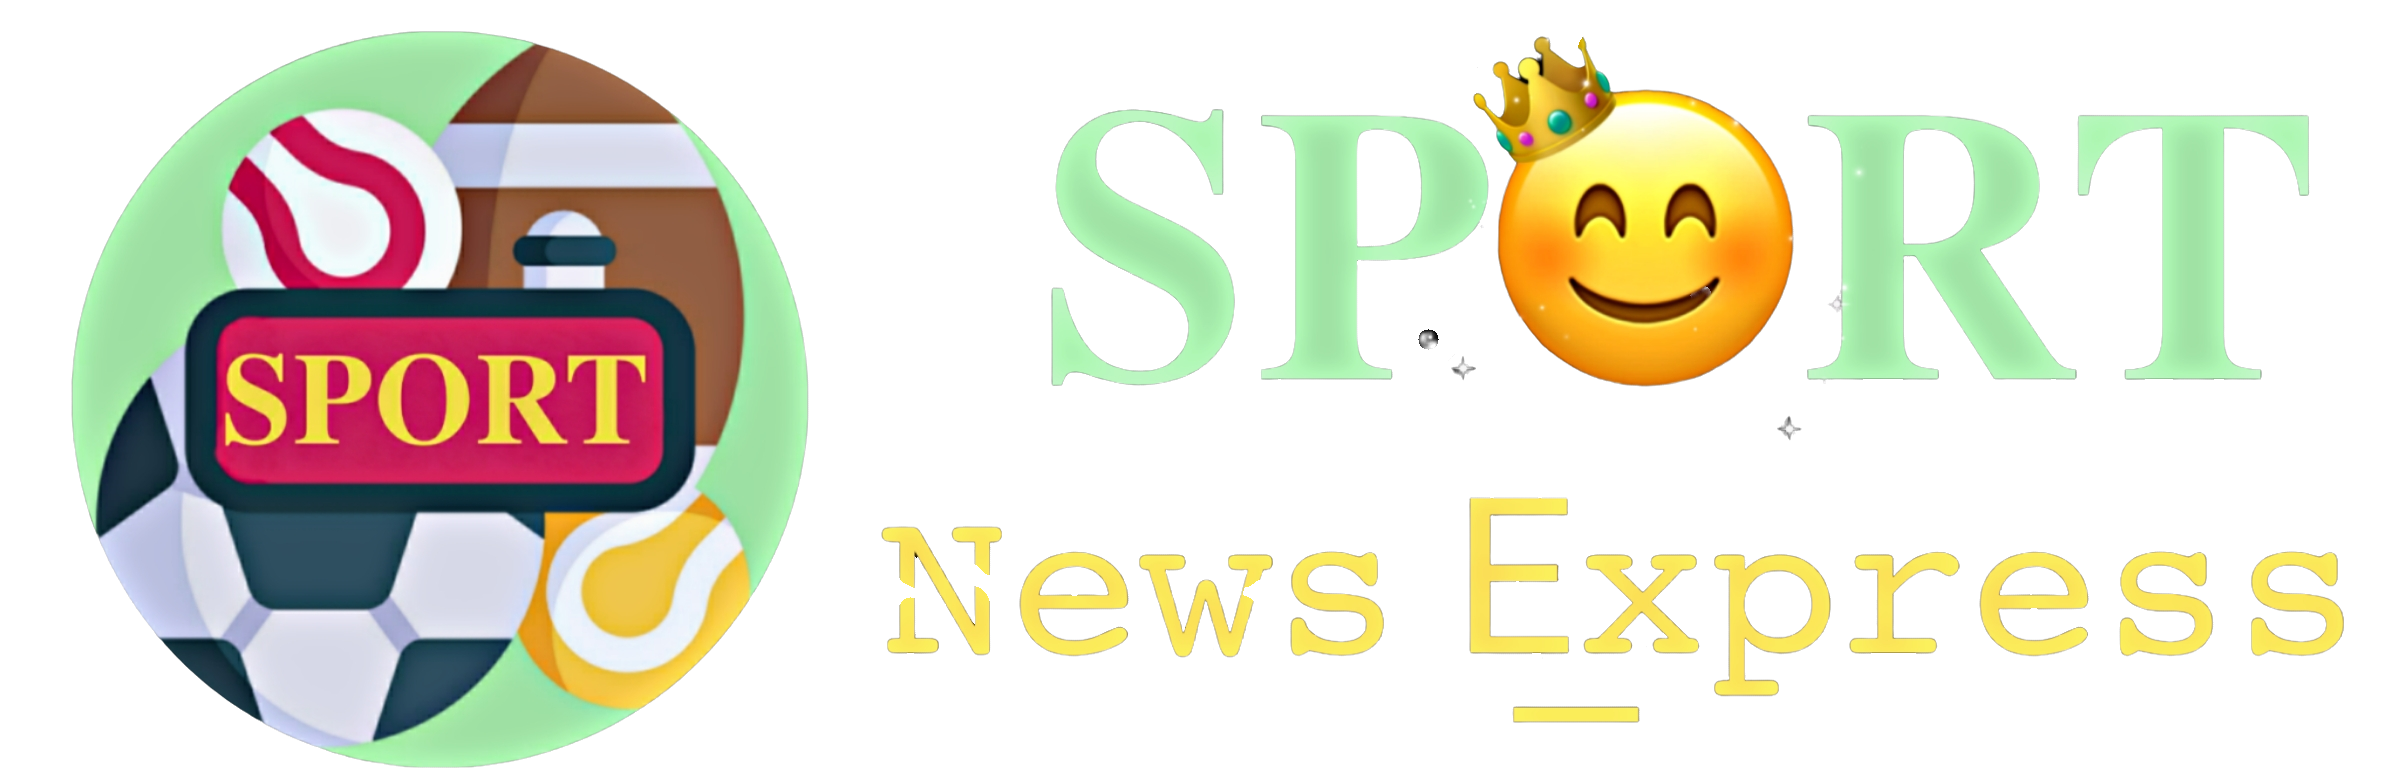 Sport News Express